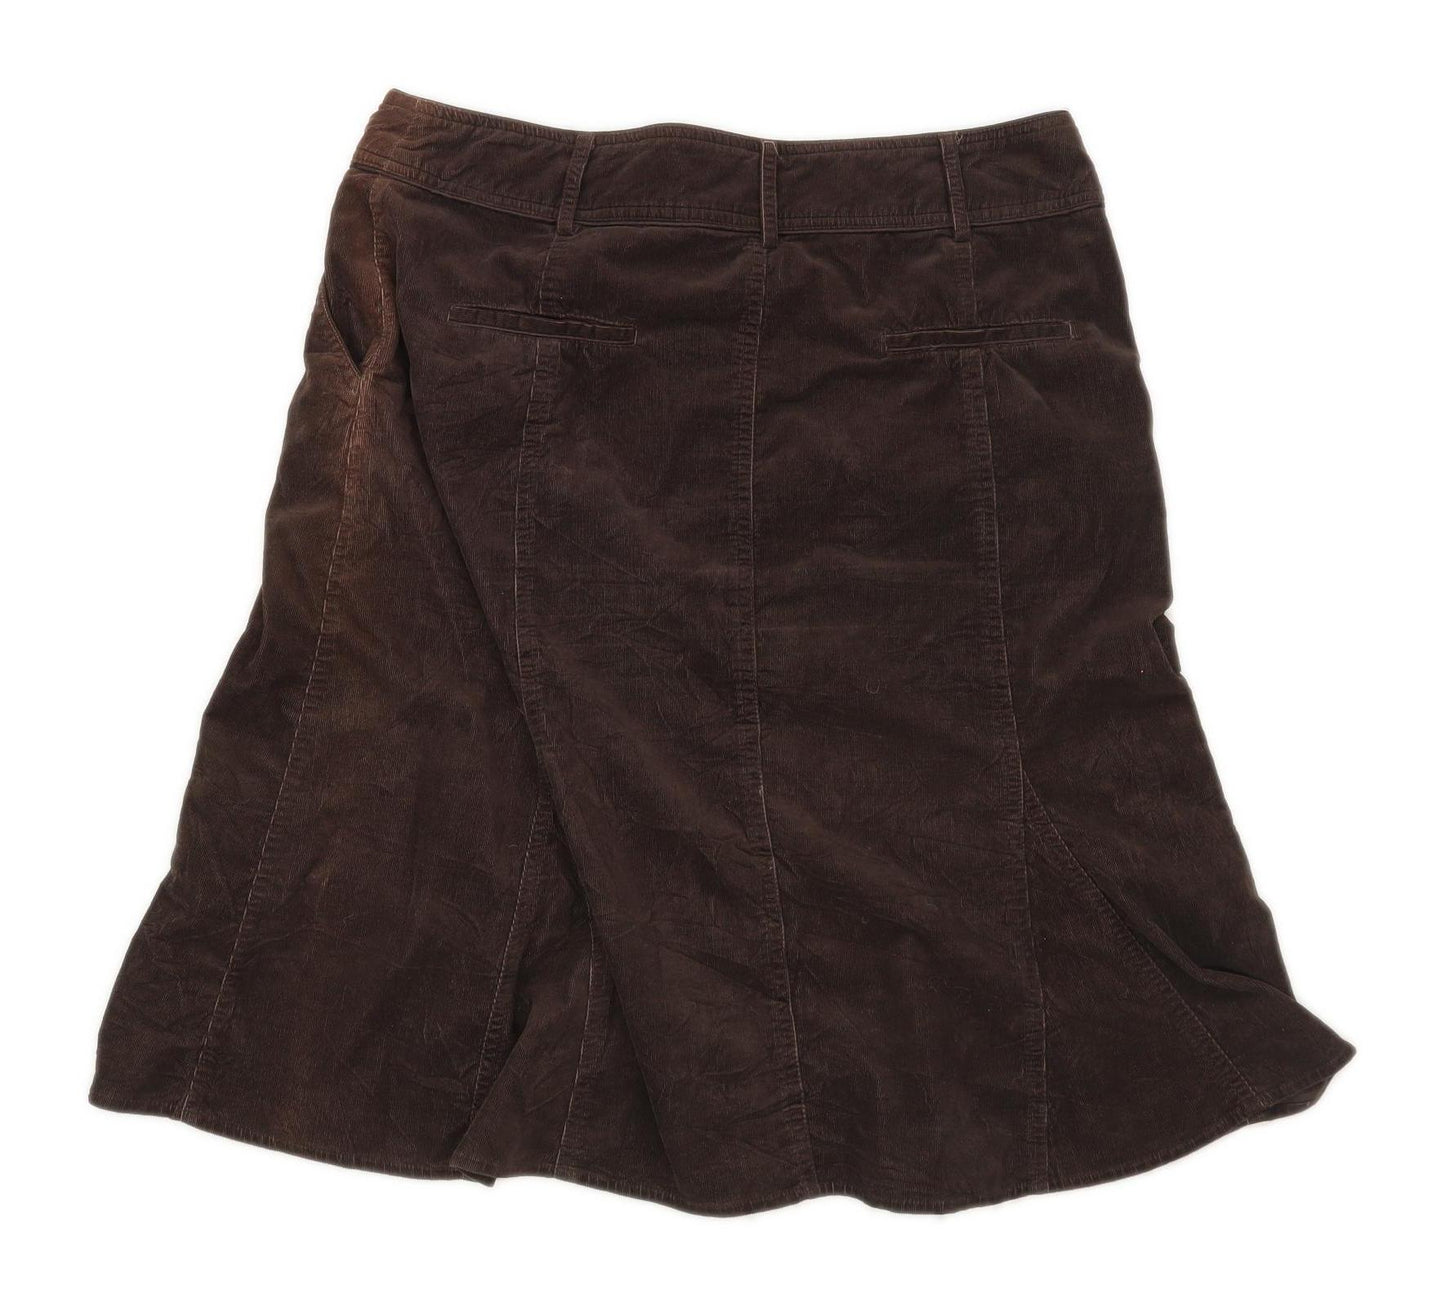 Camaieu Womens Size W34 Corduroy Blend Textured Brown Skirt (Regular)